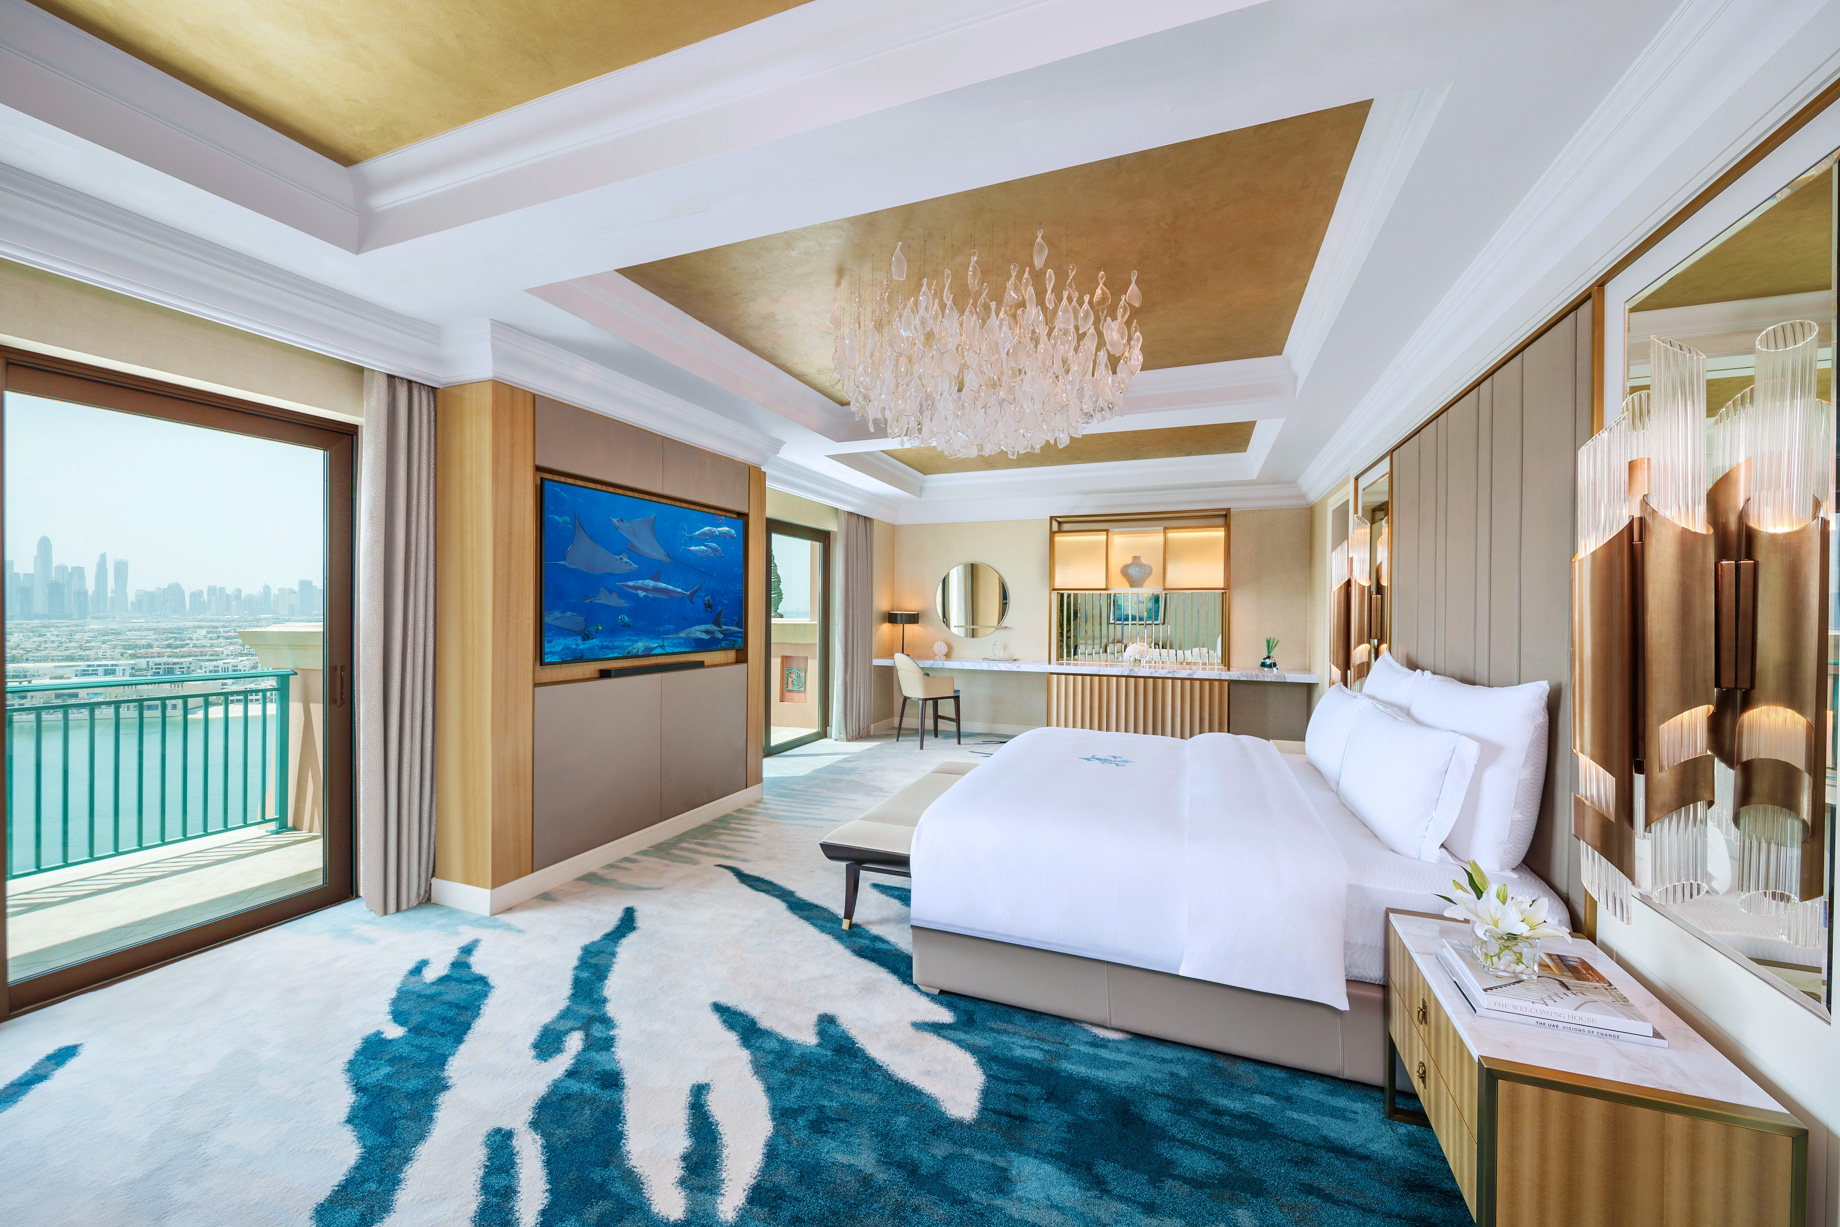 Atlantis The Palm Resort – Crescent Rd, Dubai, UAE – Presidential Suite Bedroom